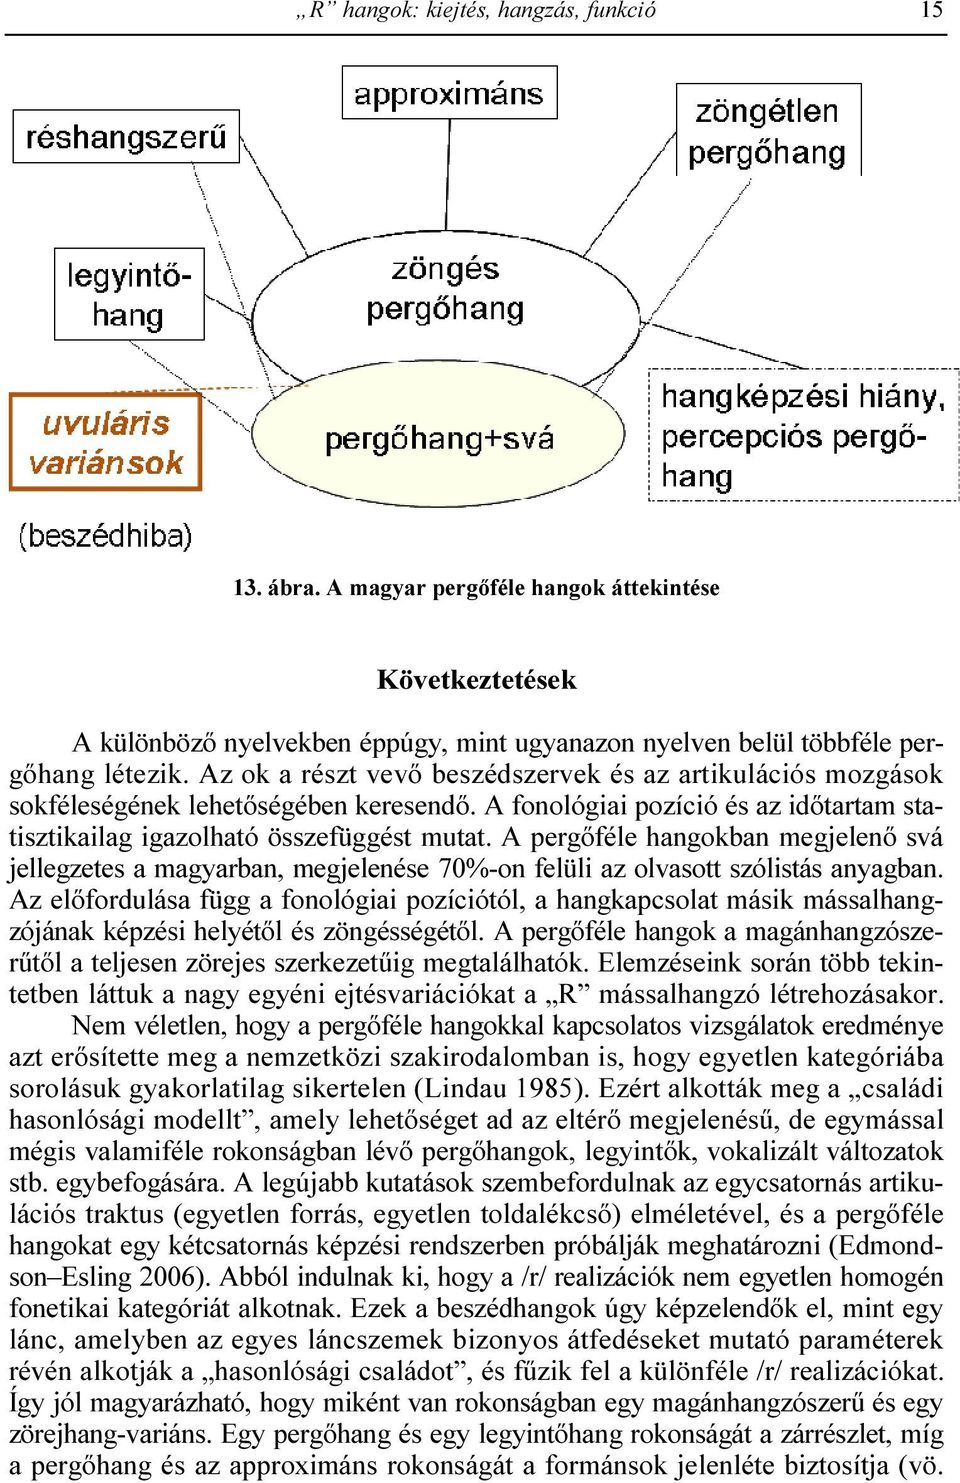 A pergıféle hangokban megjelenı svá jellegzetes a magyarban, megjelenése 70%-on felüli az olvasott szólistás anyagban.